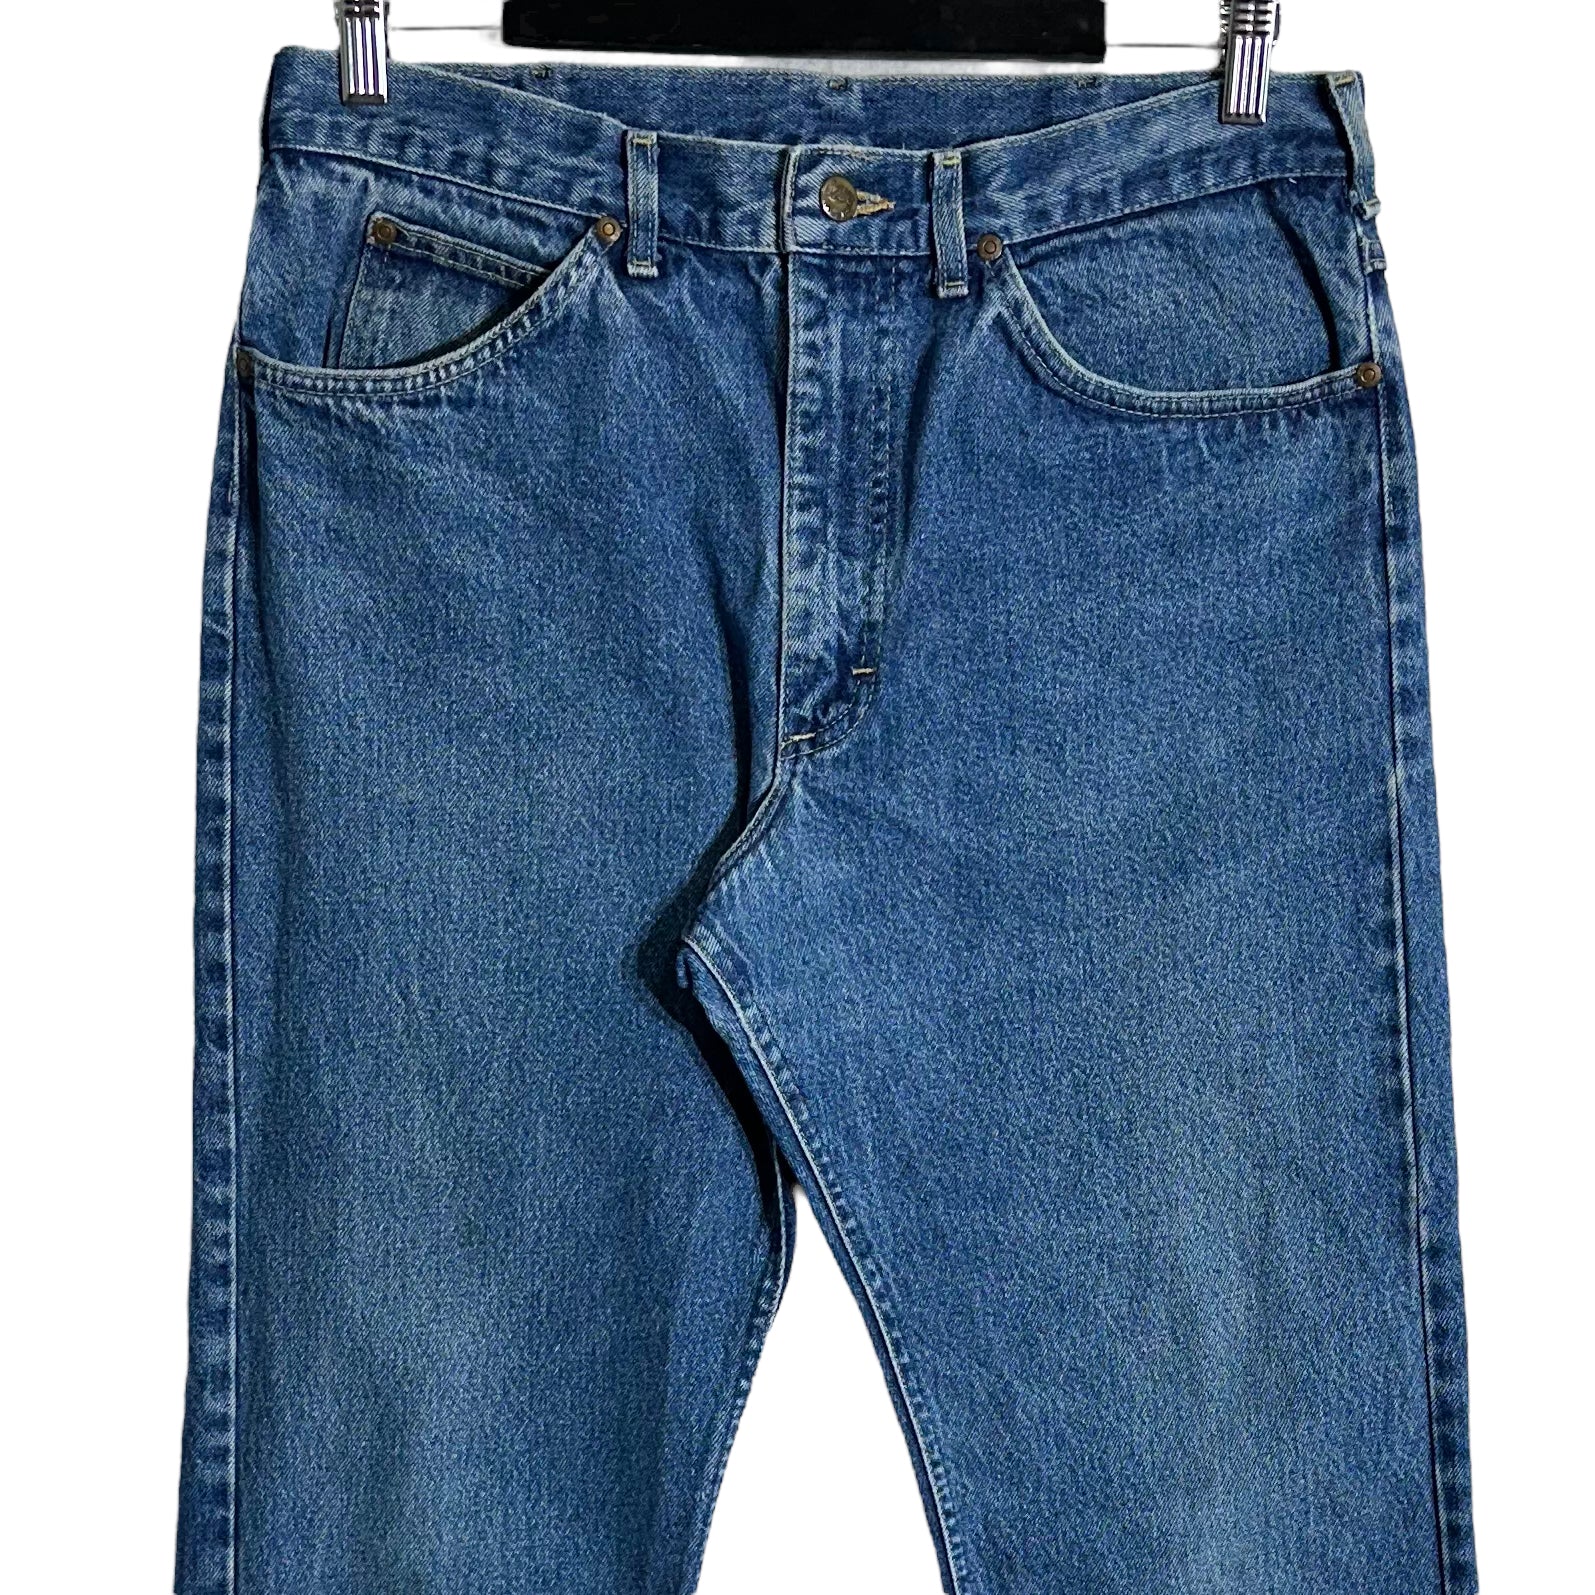 Vintage LEE Medium Wash Straight Leg Denim jeans